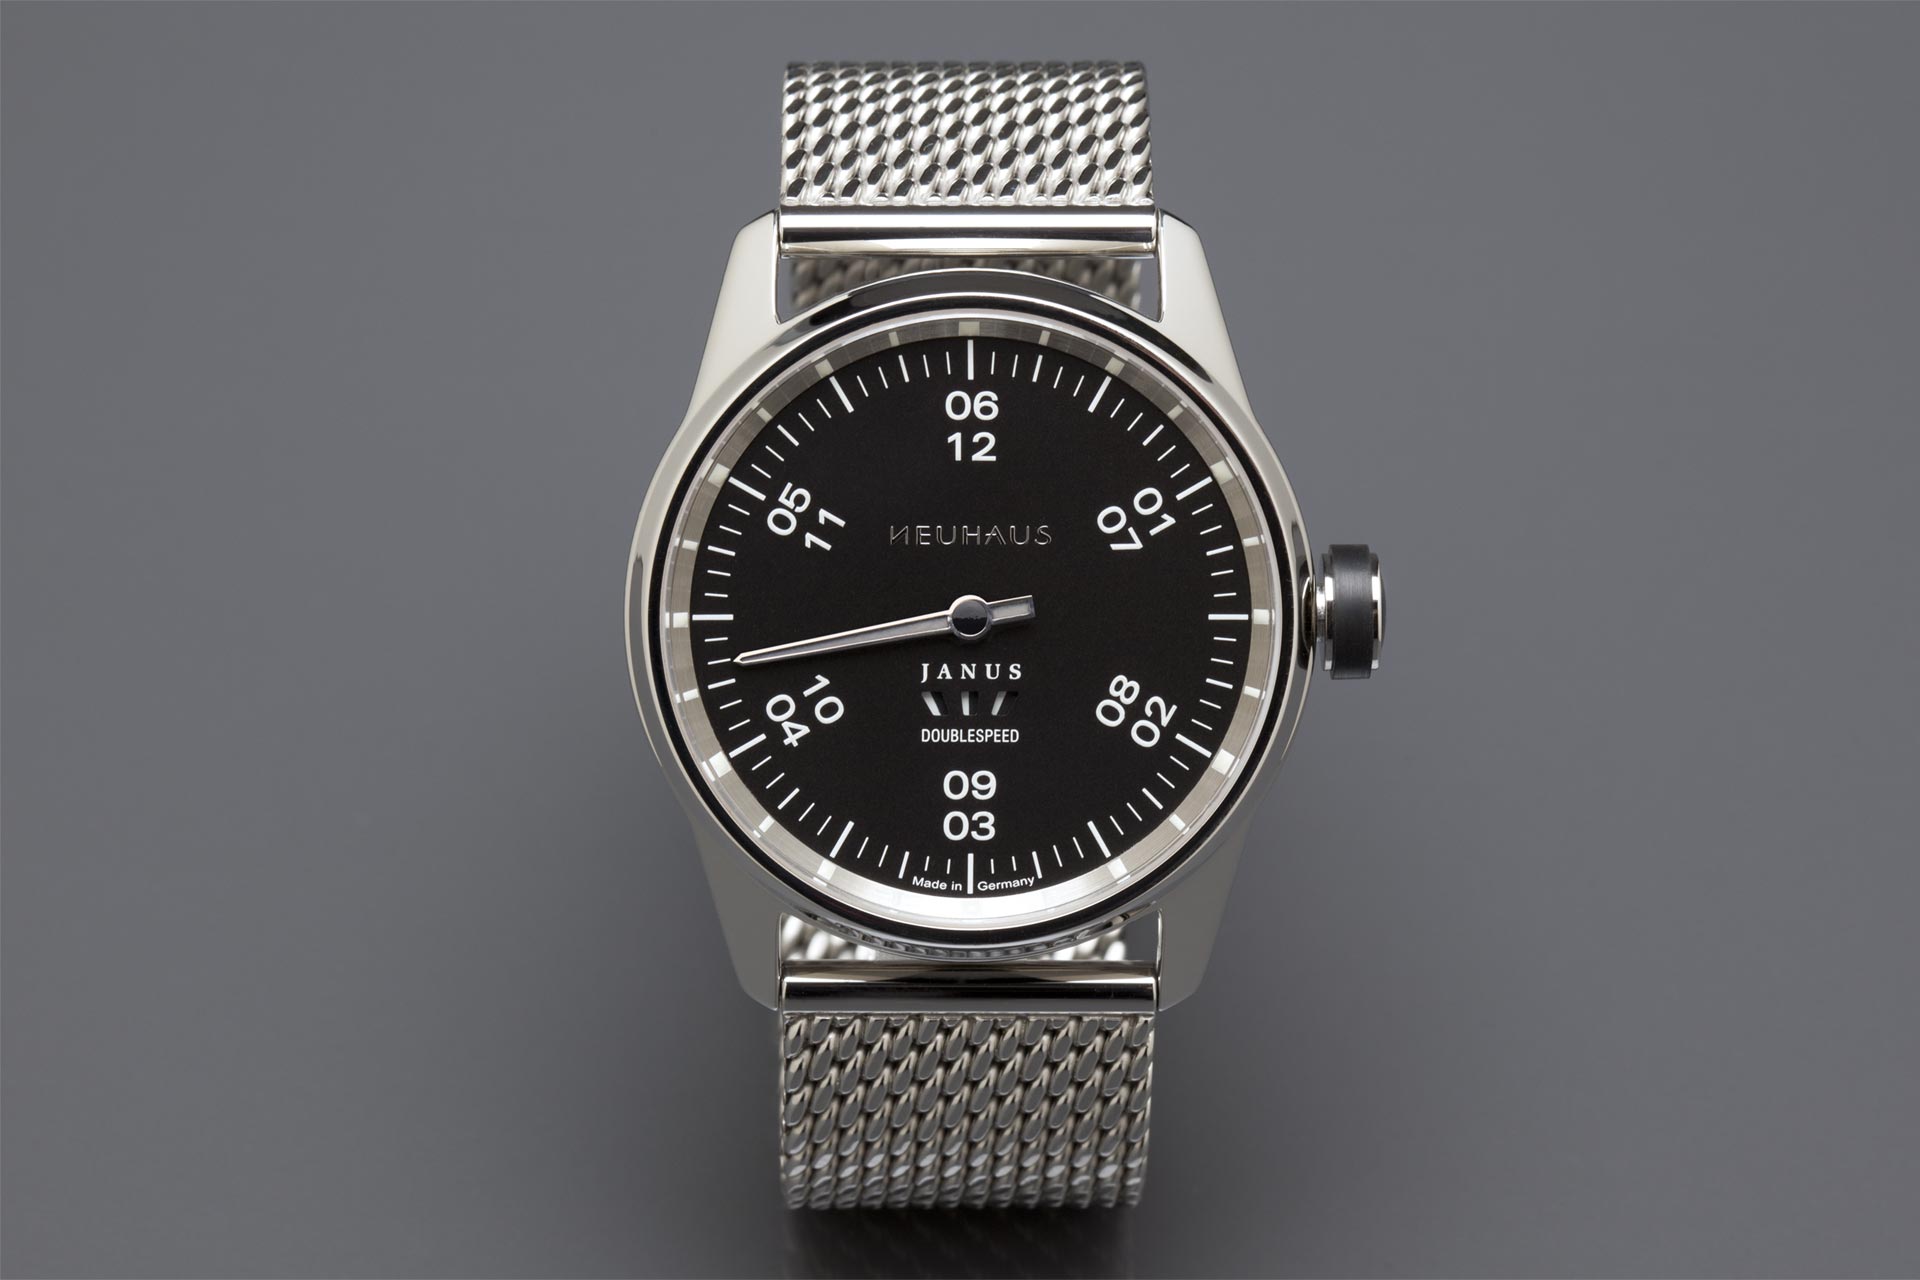 Einzeigeruhr von NEUHAUS Timepieces, Modell JANUS DoubleSpeed ds04n soldat mobil